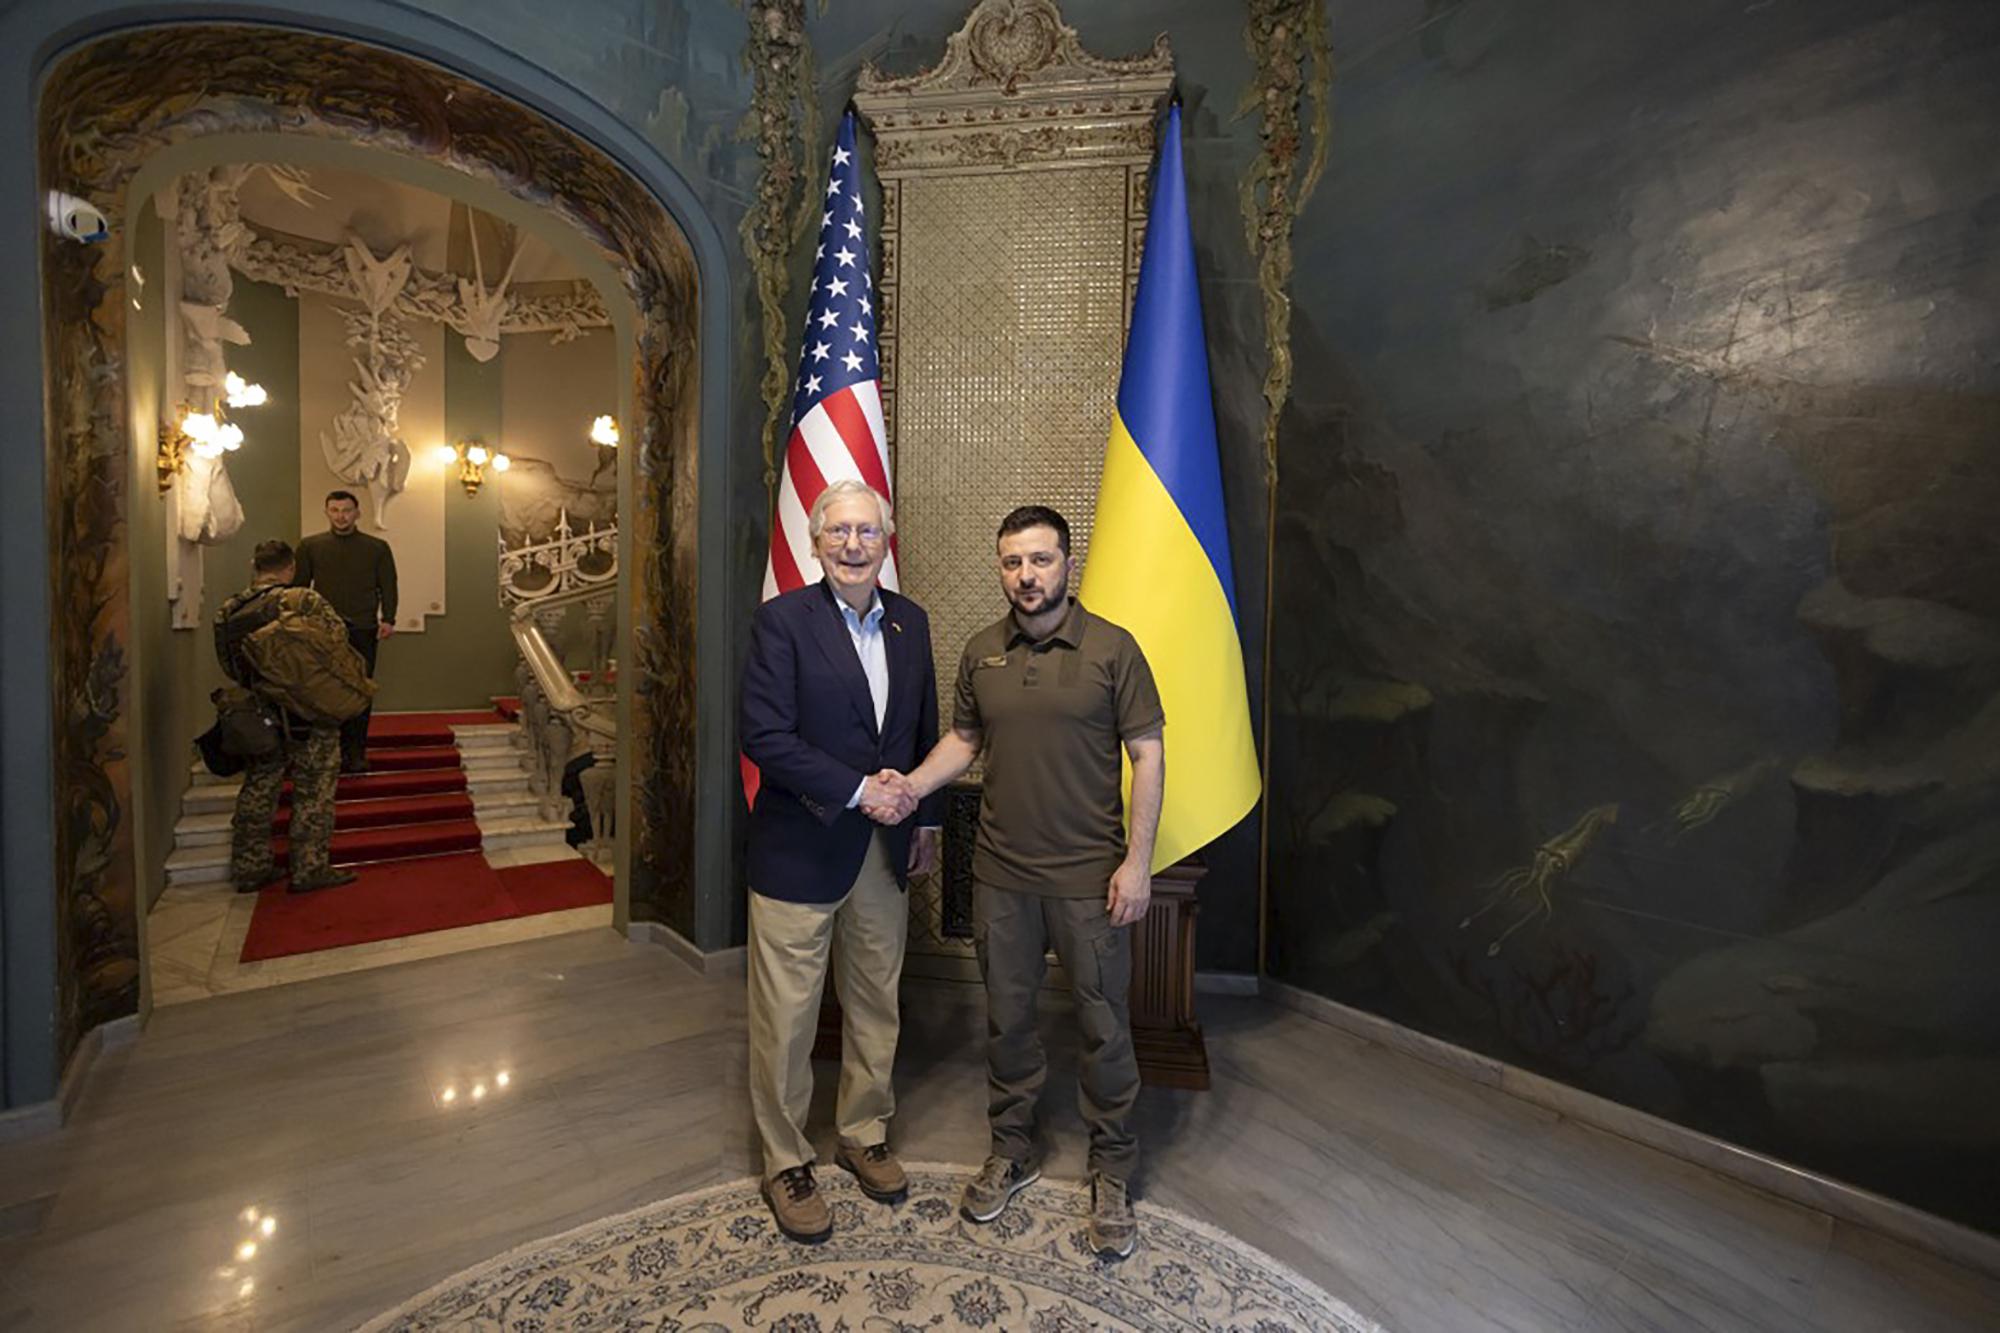 Sen. Mitch McConnell, Ukraine ambassador visit UofL